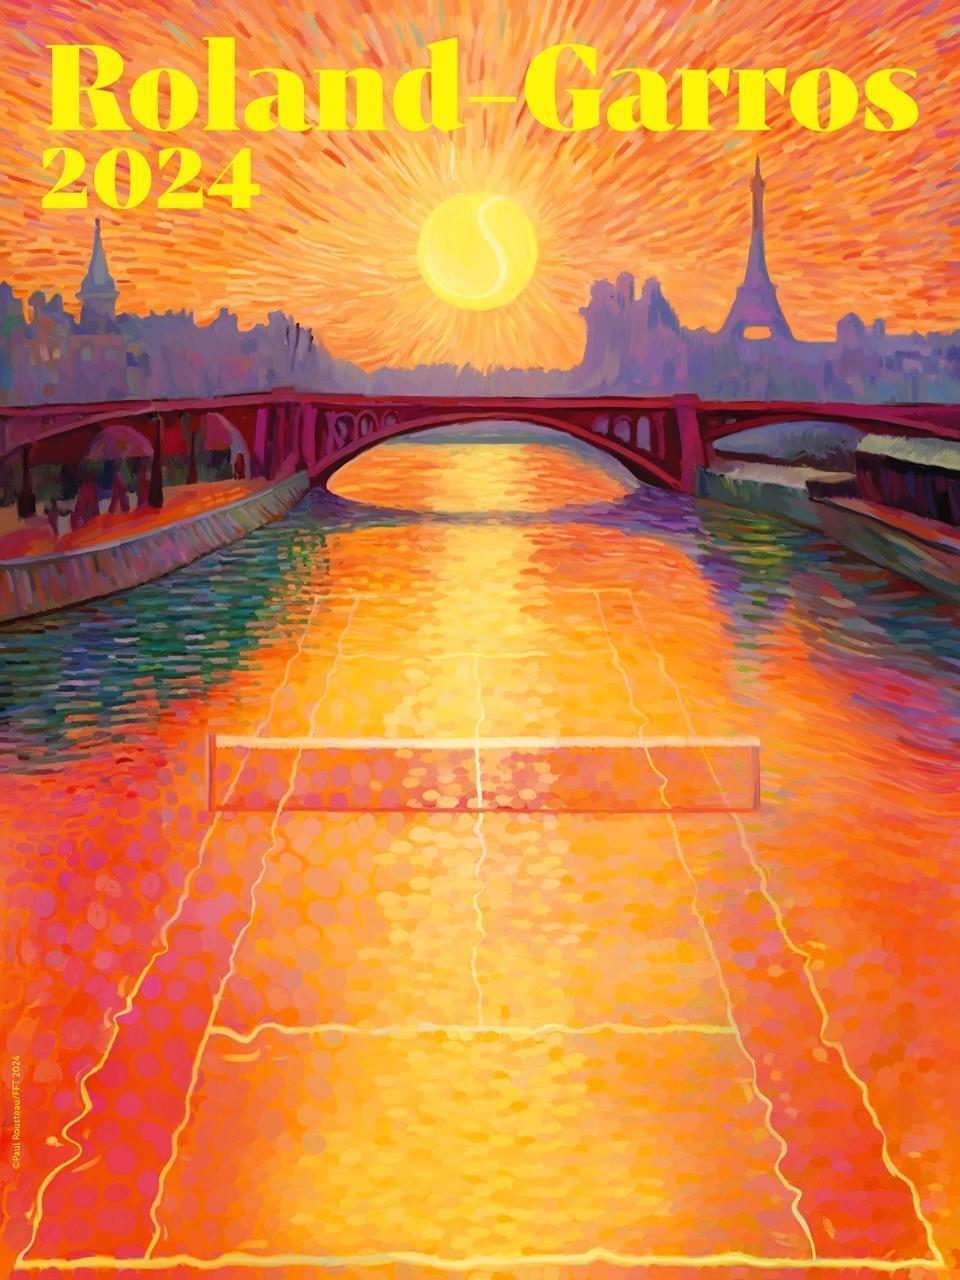 RolandGarros. L’affiche de l’édition 2024 dévoilée, avec un clin d’œil aux Jeux